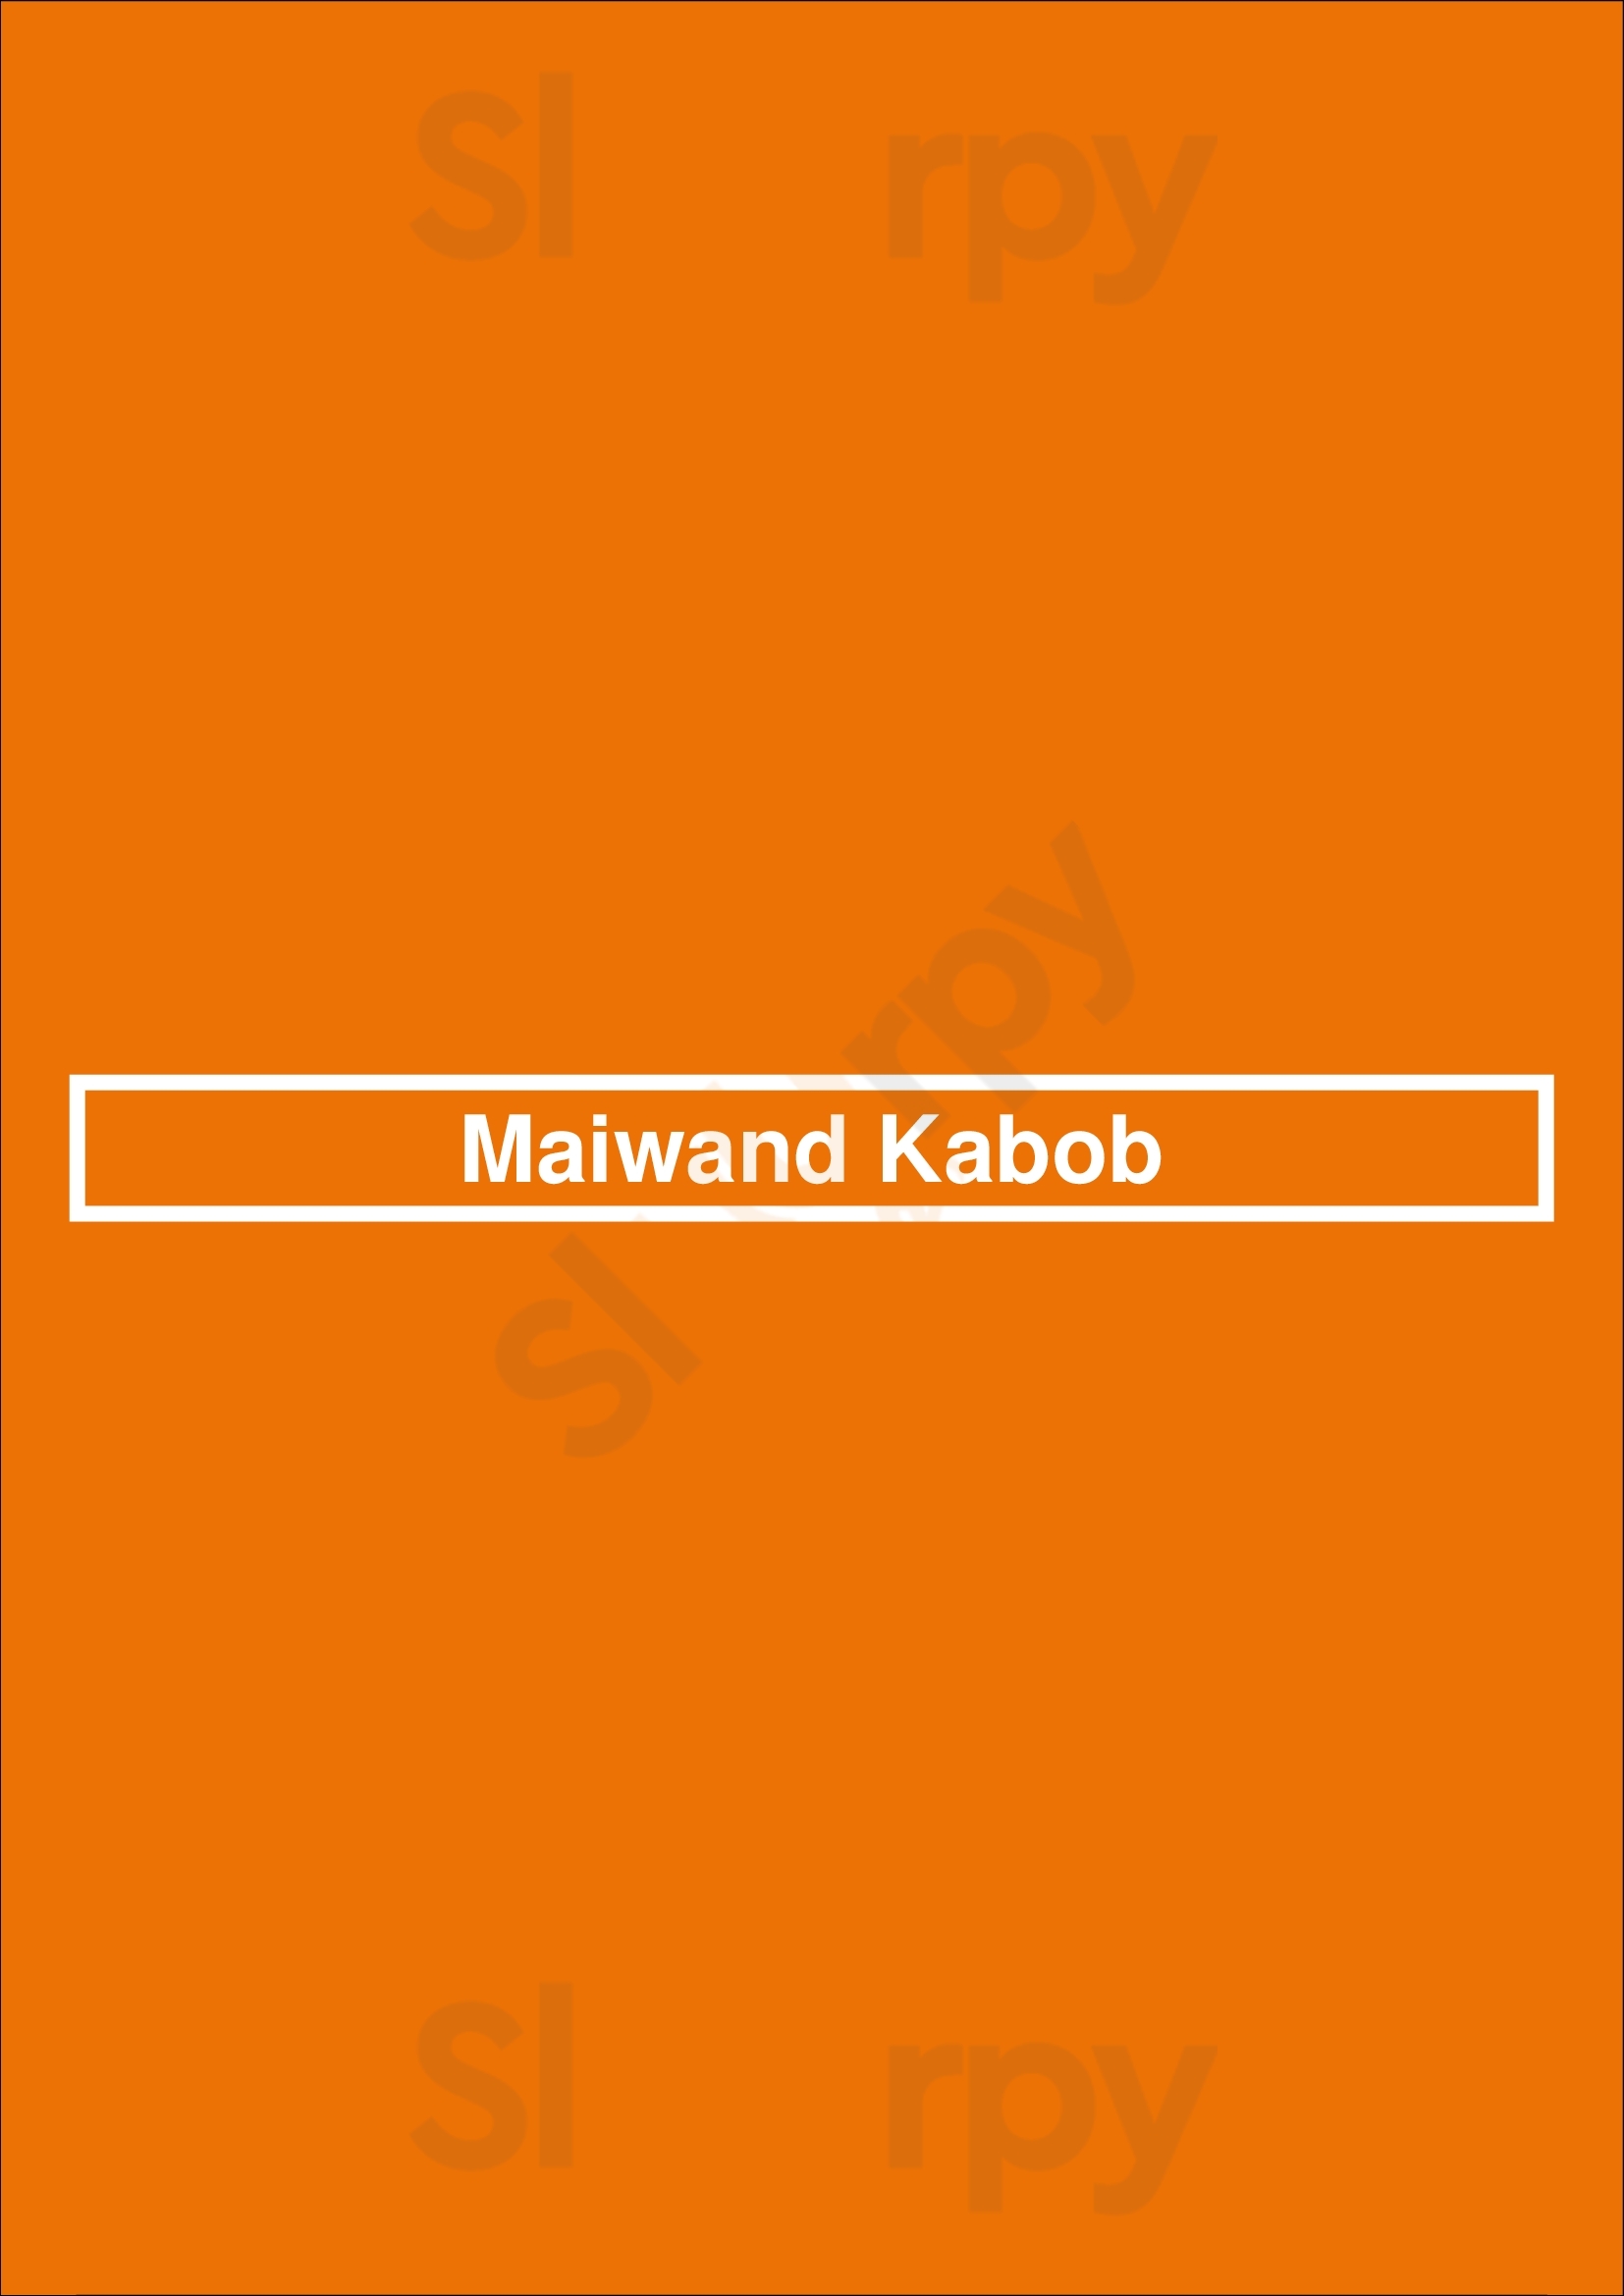 Maiwand Kabob Columbia Menu - 1